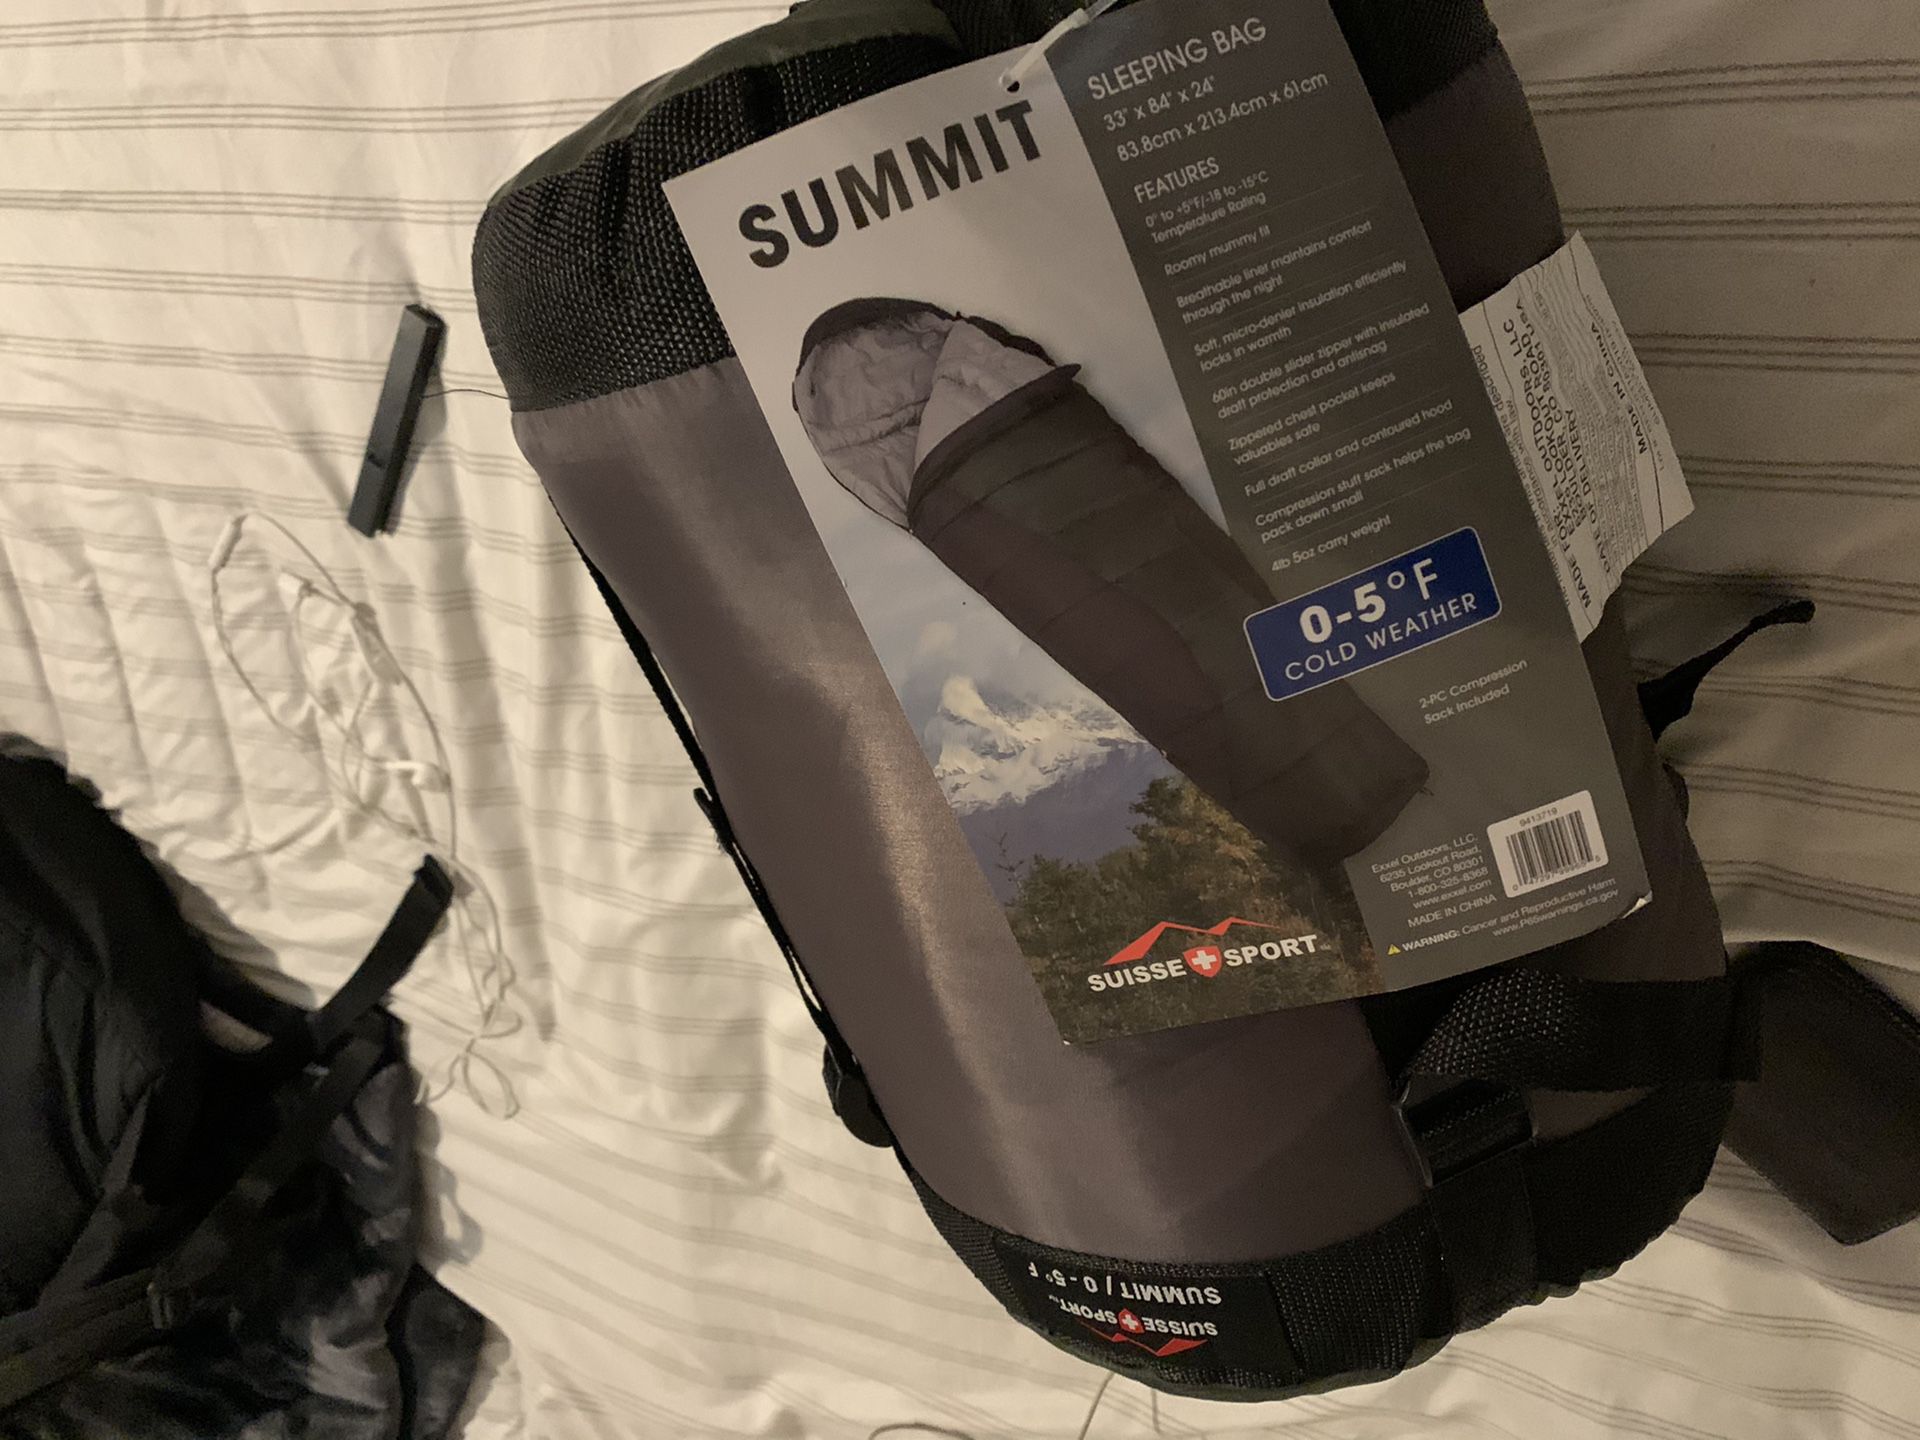 Summit sleeping bag